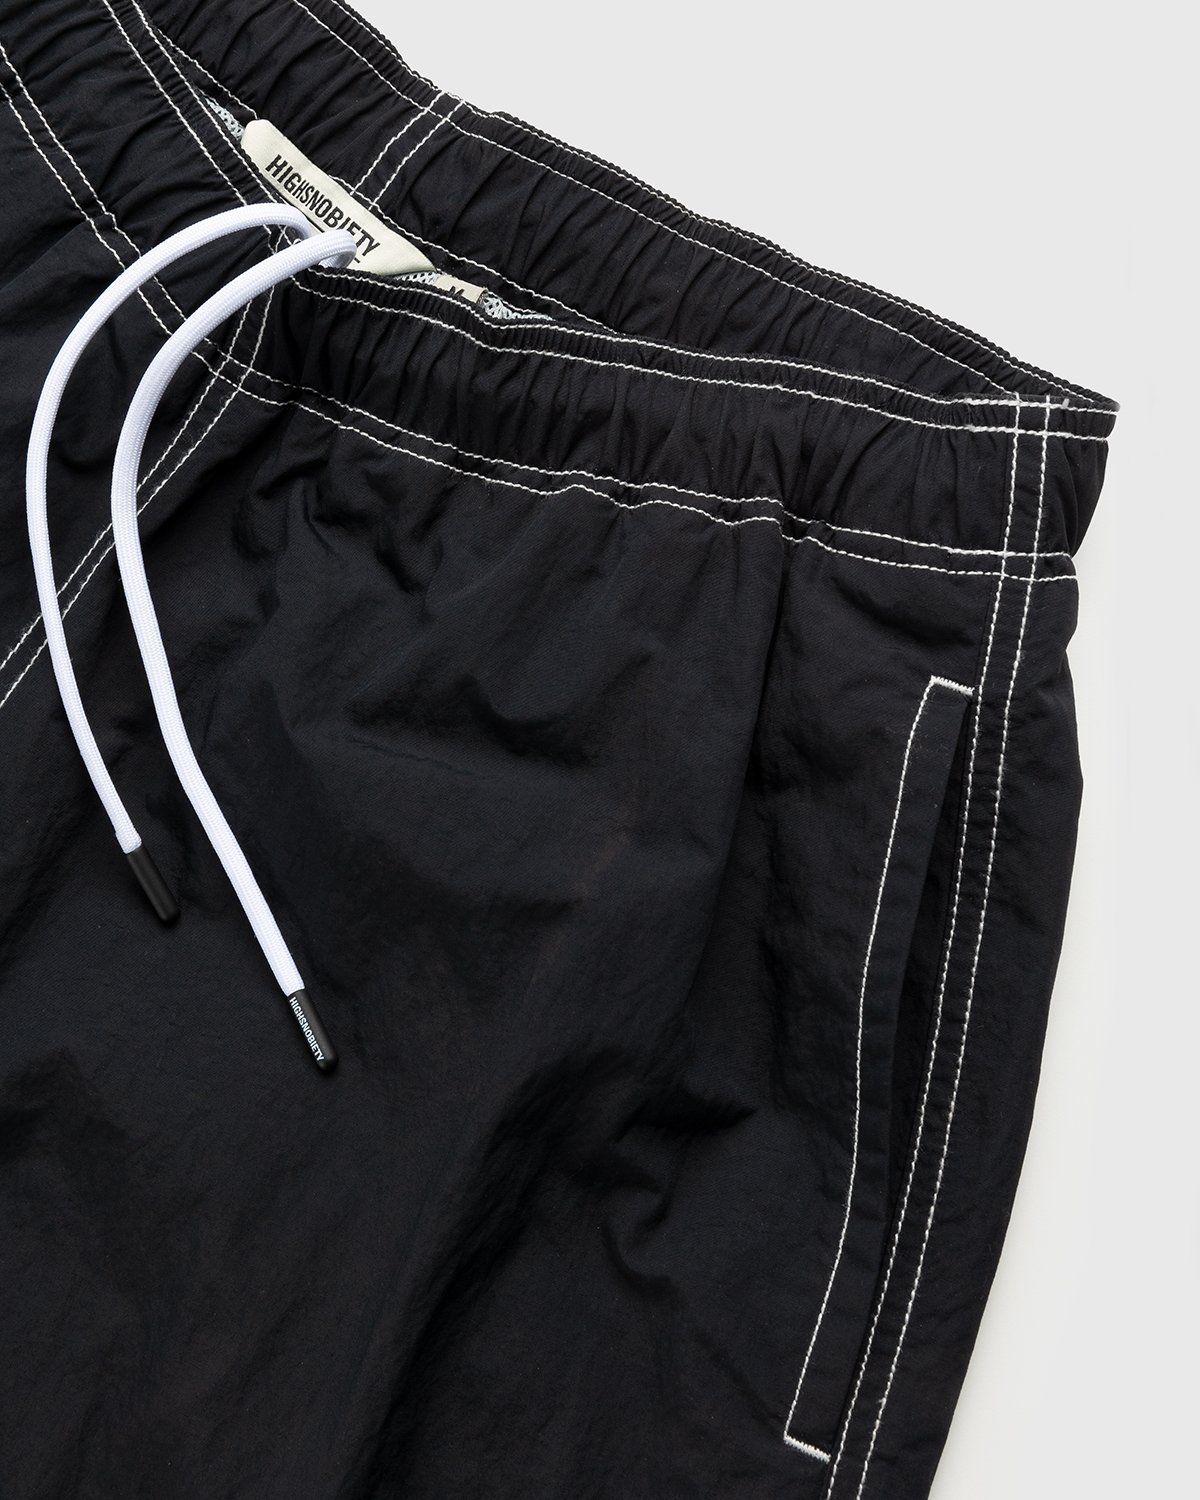 Highsnobiety – Contrast Brushed Nylon Water Shorts Black - Active Shorts - Black - Image 4